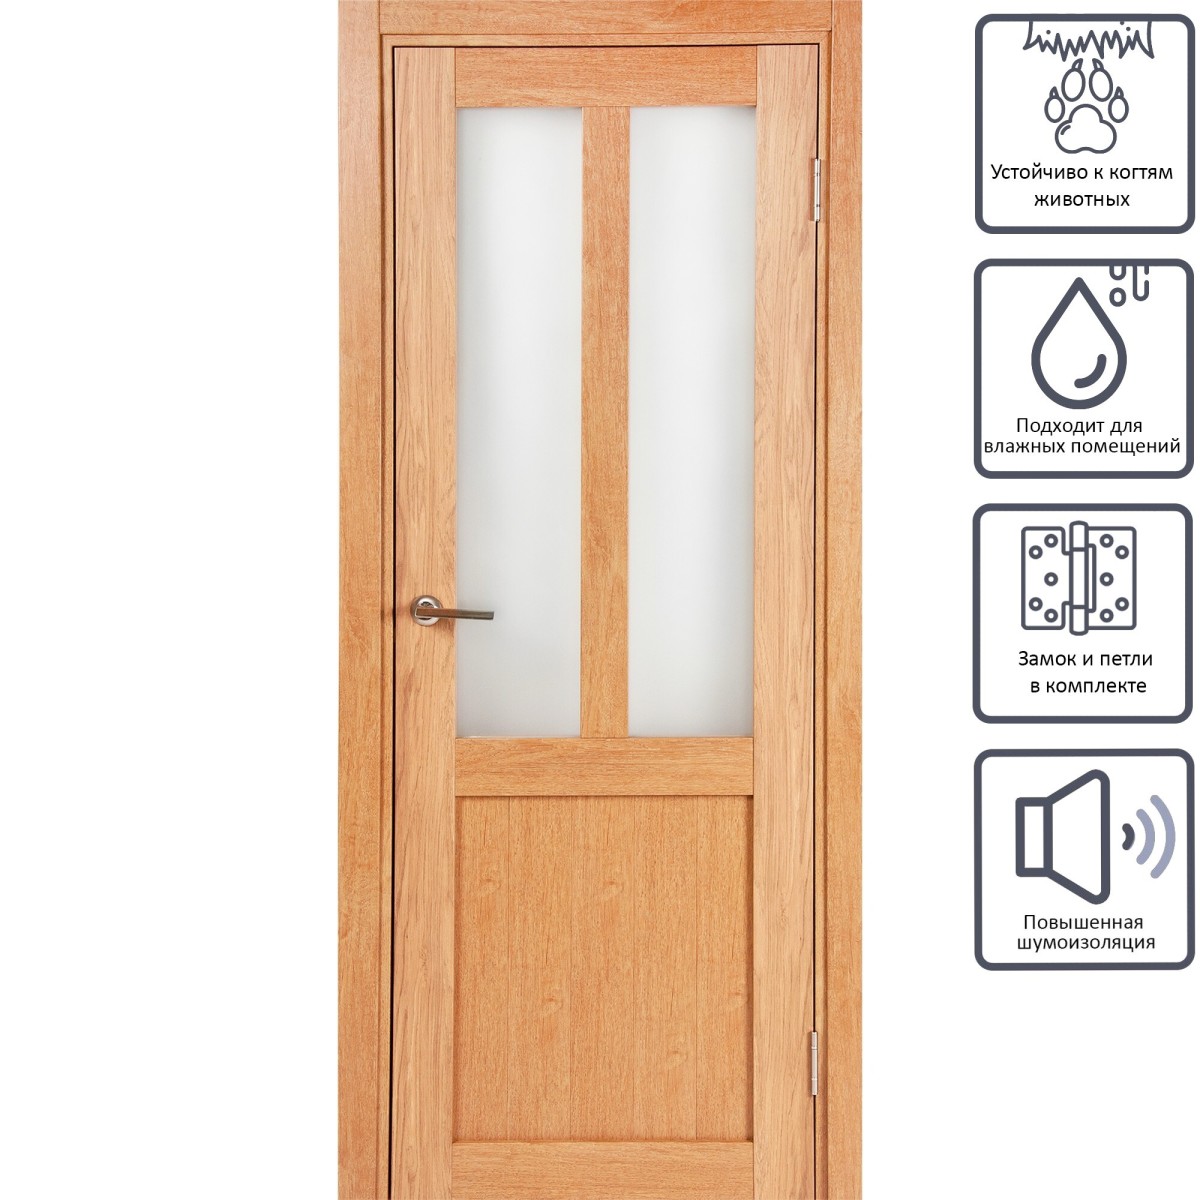 Дверь межкомнатная остеклённая Кантри 60x200 см, ПВХ, цвет дуб арагон, с фурнитурой